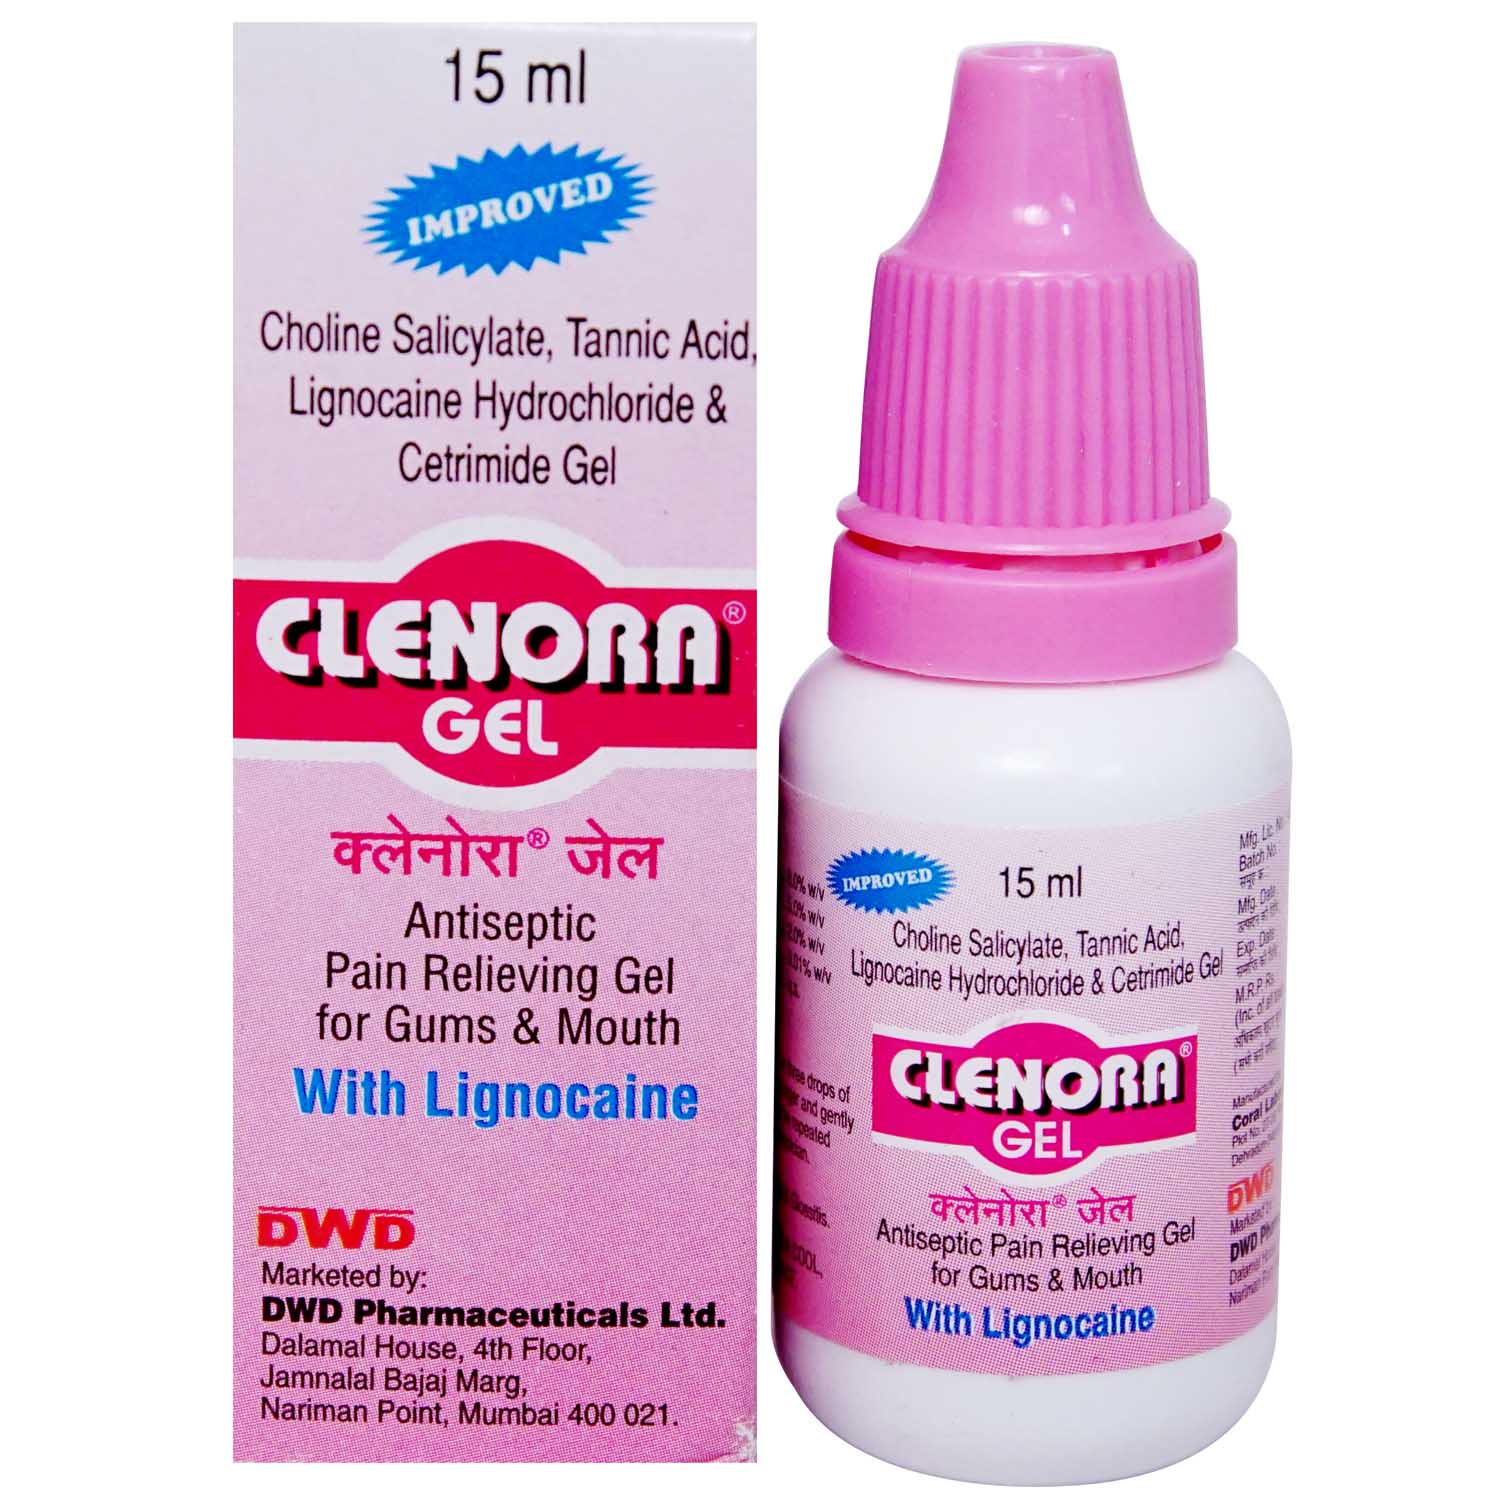 Buy Clenora Gel 15 ml Online